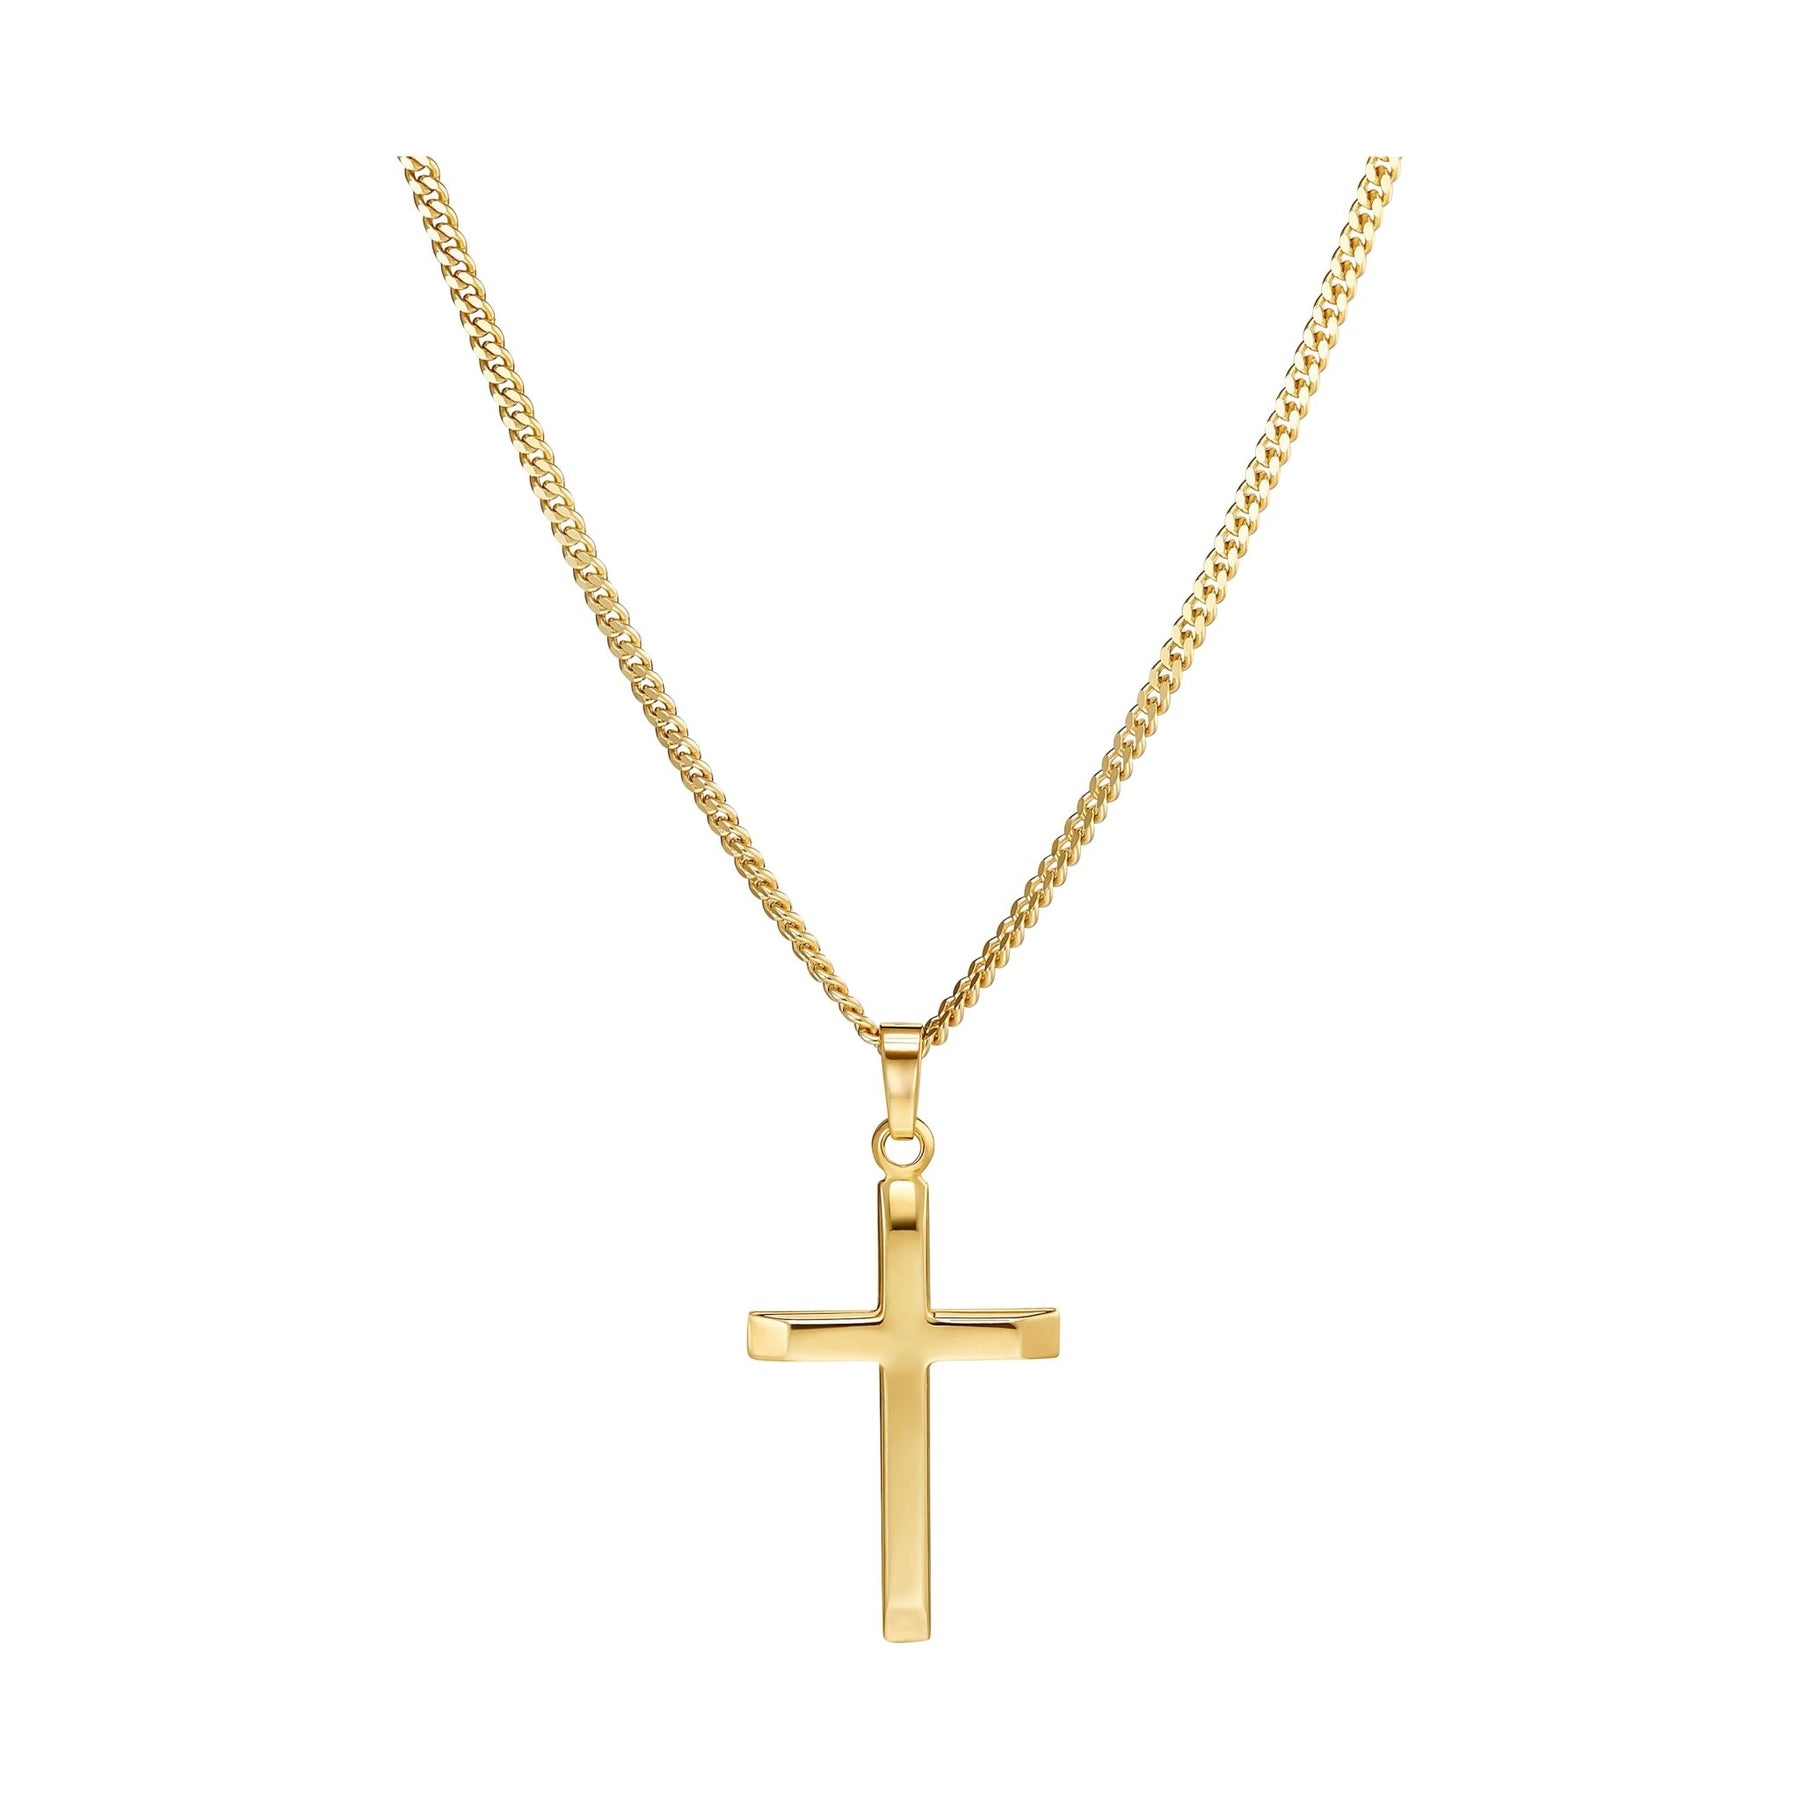 IDENTIM® Herren Kreuz Anhänger Halskette 333 Gold